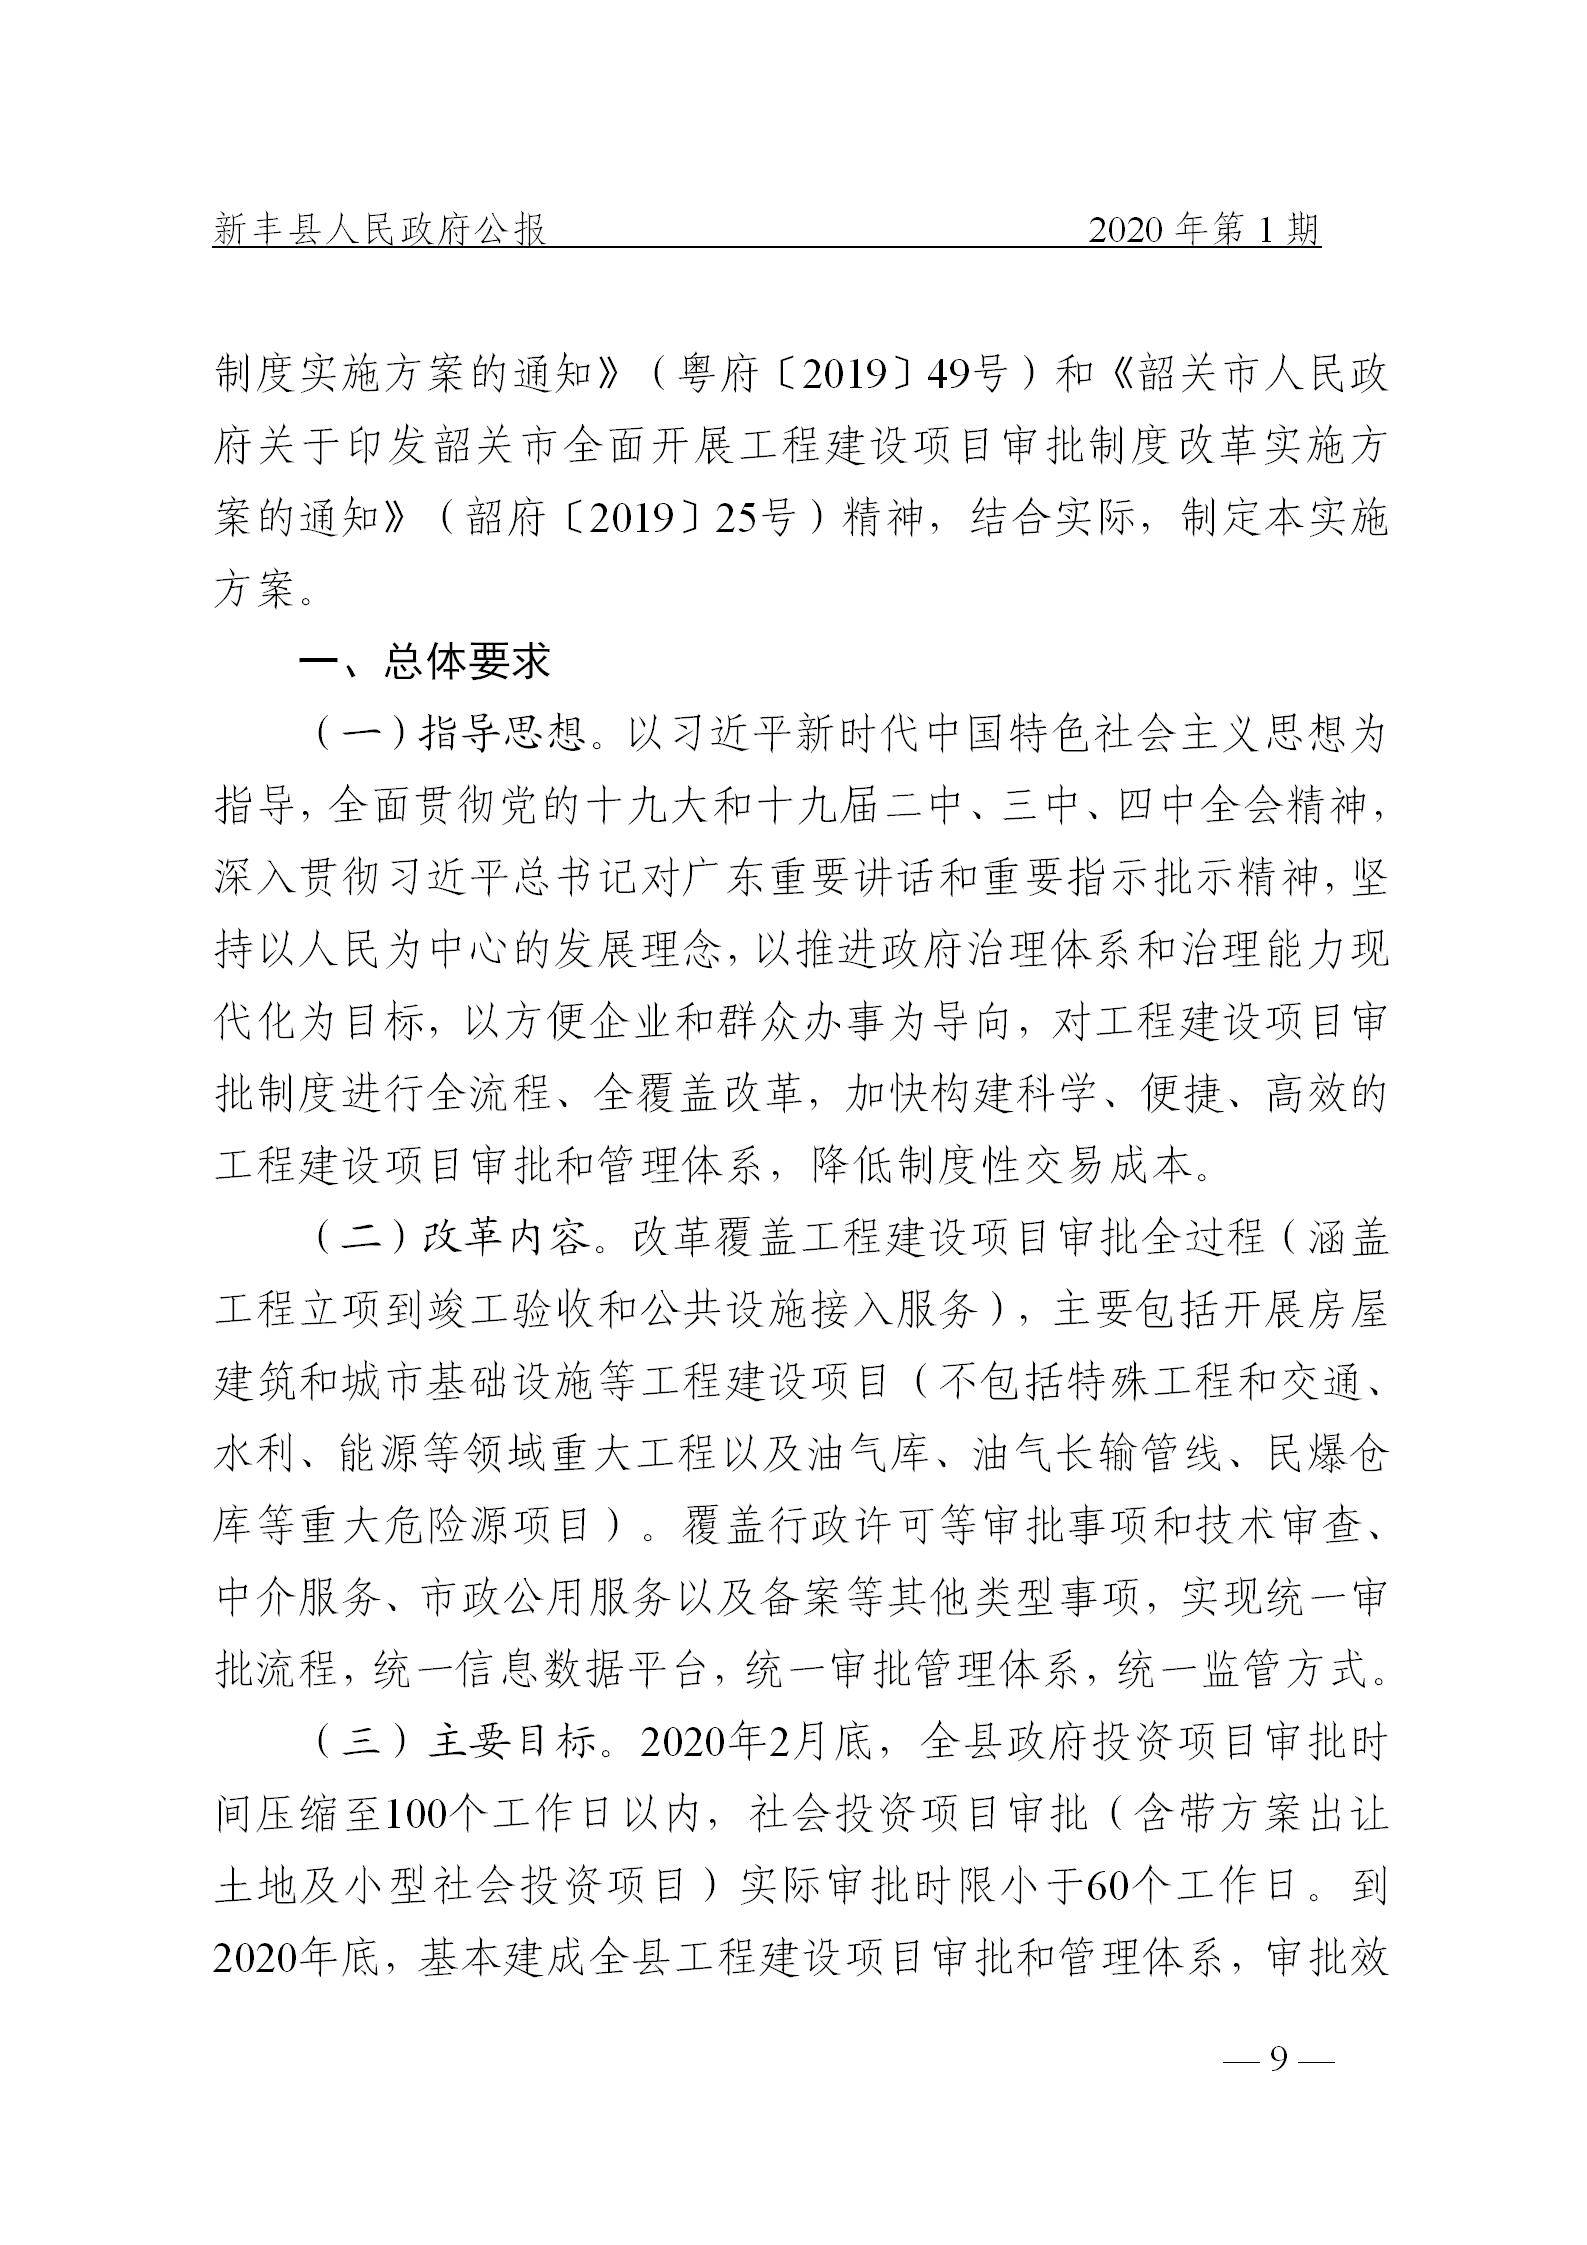 《新丰县人民政府公报》2020年第1期(1)_09.png